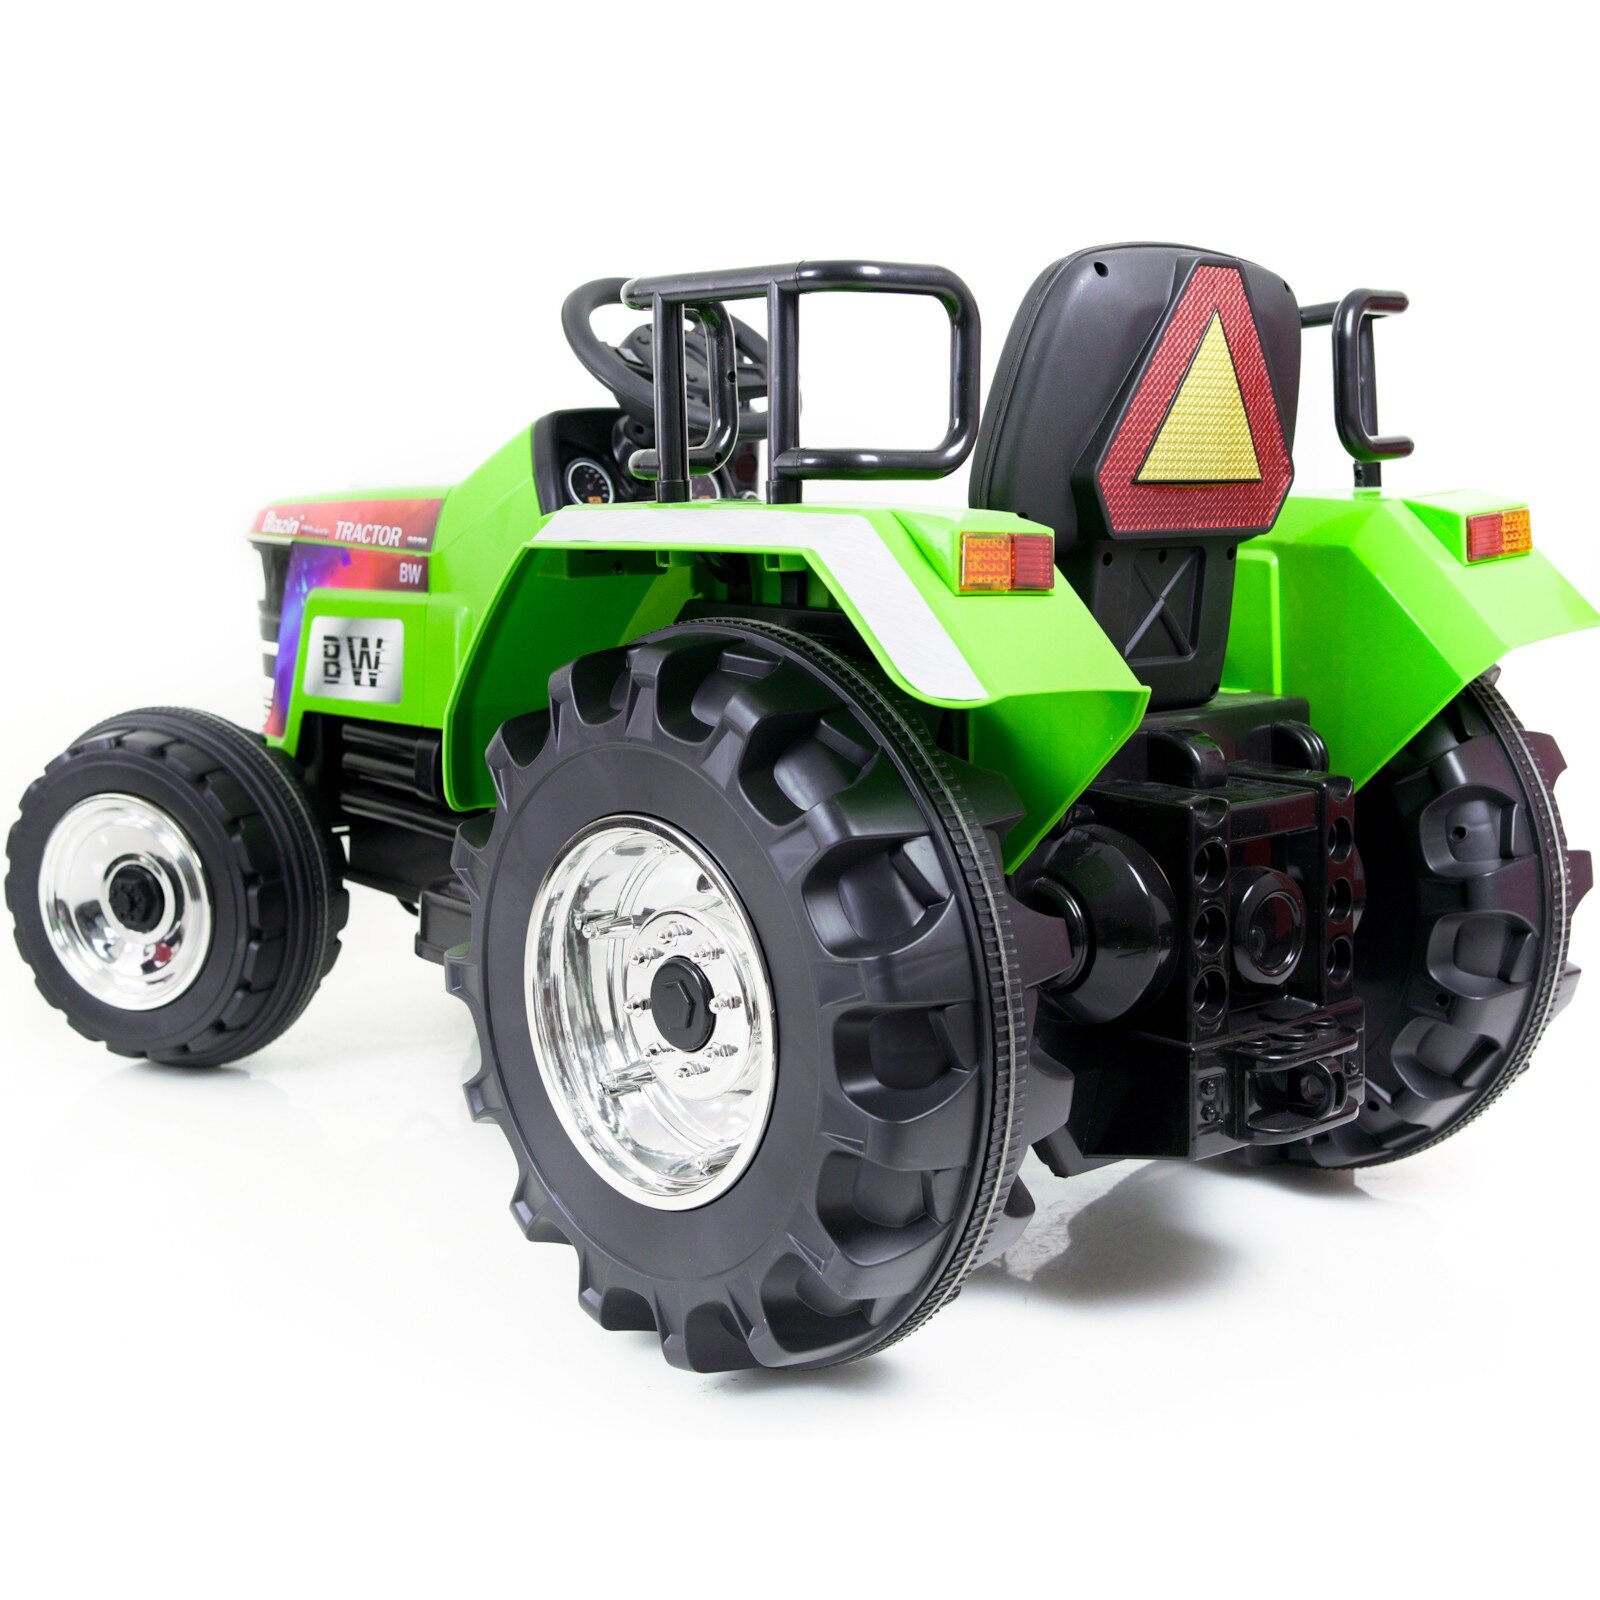 Elbil barn Traktor Harris 12V - Grön